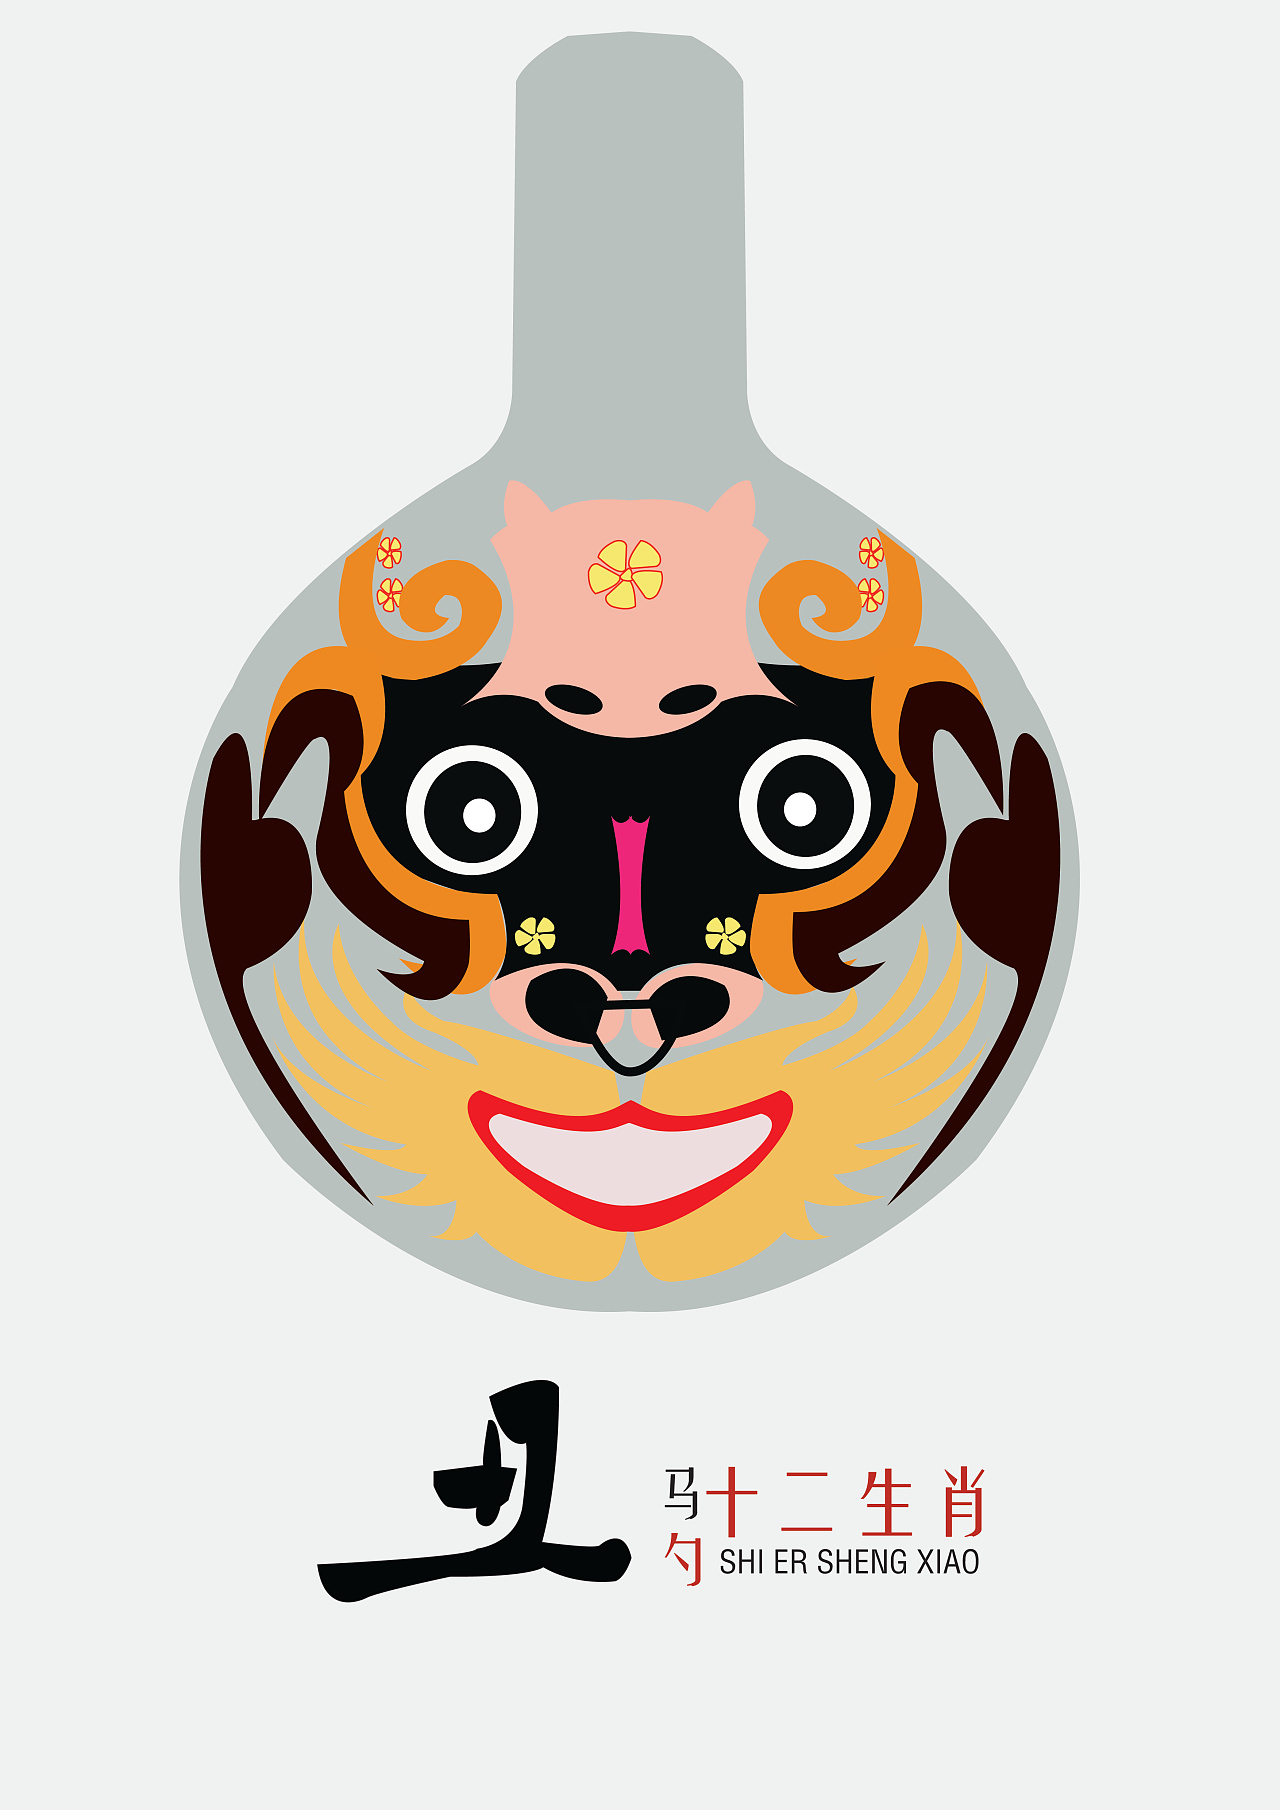 中国民间马勺脸谱-十二生肖(14年毕业设计&总结)